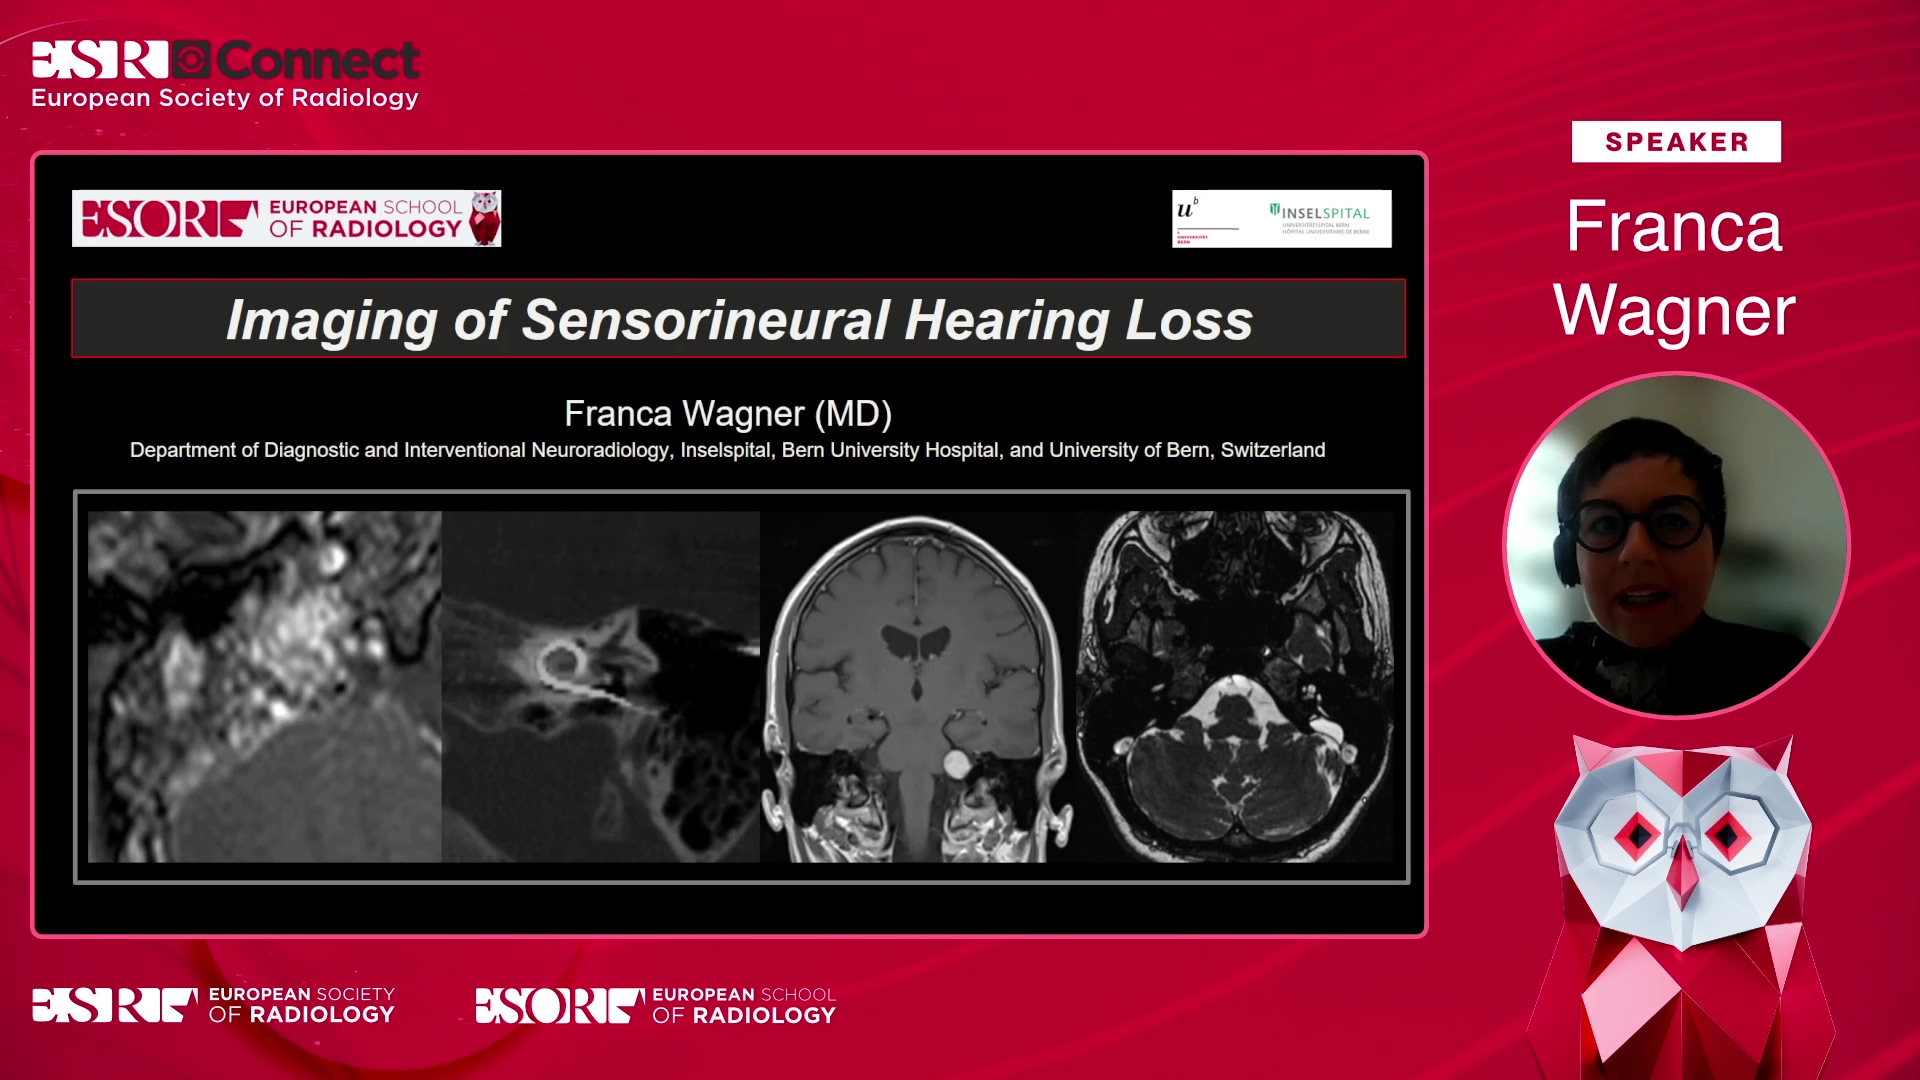 Imaging of sensorineural hearing loss